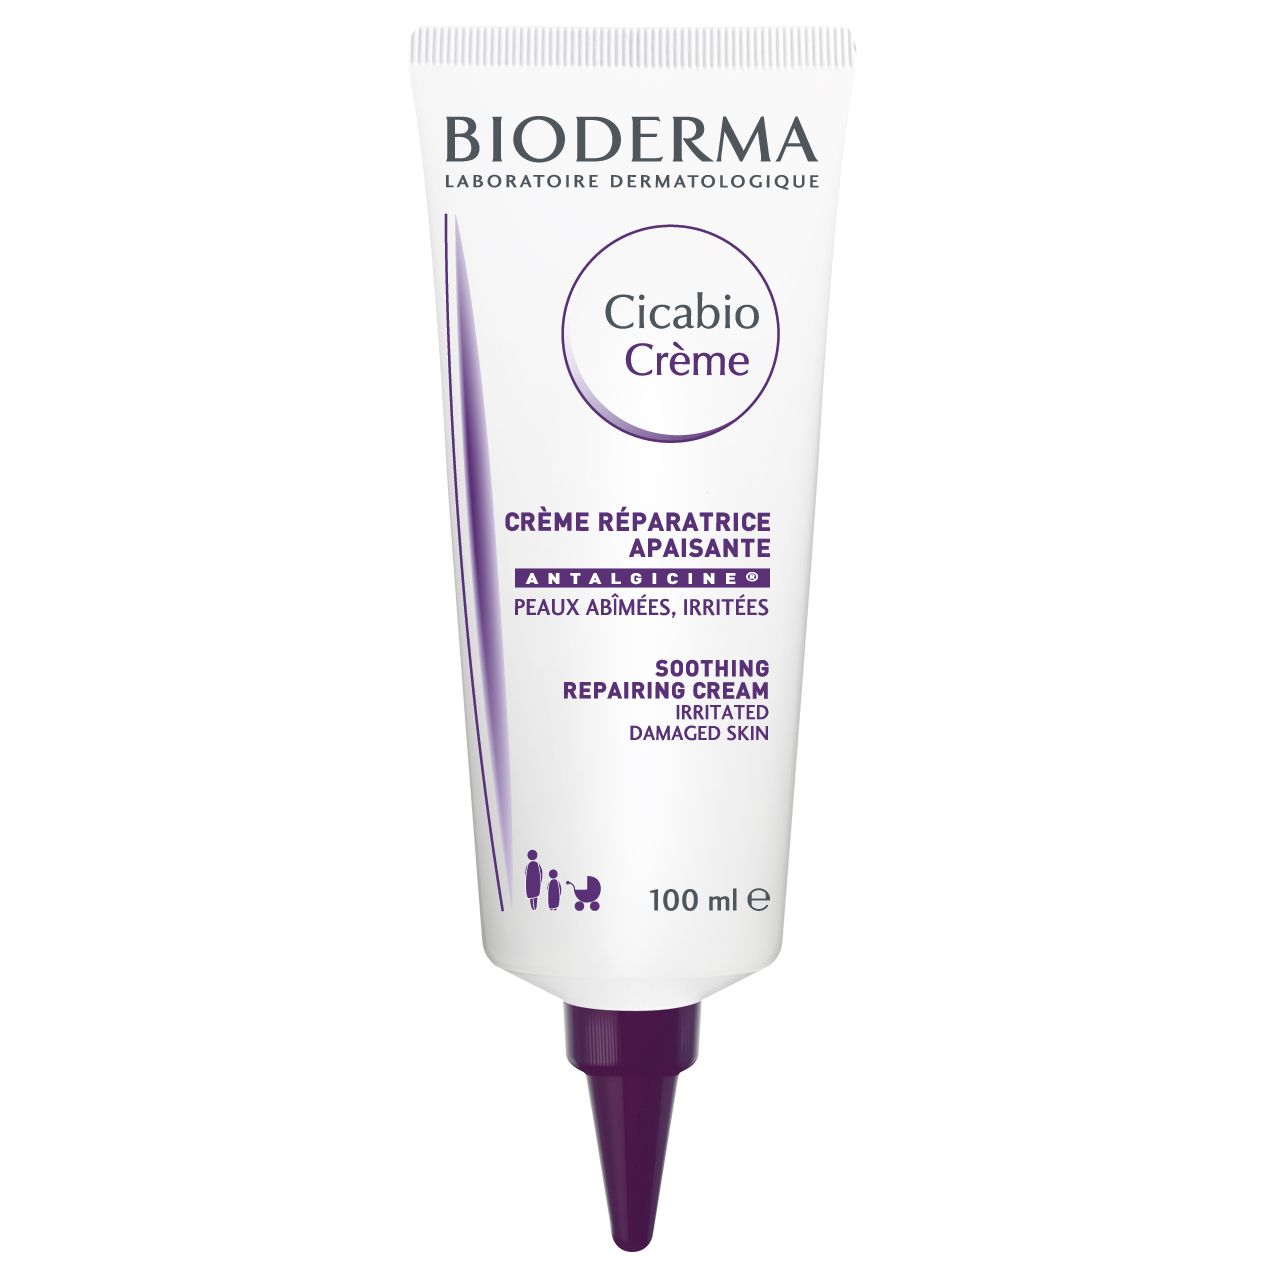 Bioderma - Kem dưỡng làm dịu và phục hồi nhanh da tổn thương Bioderma Cicabio Crème